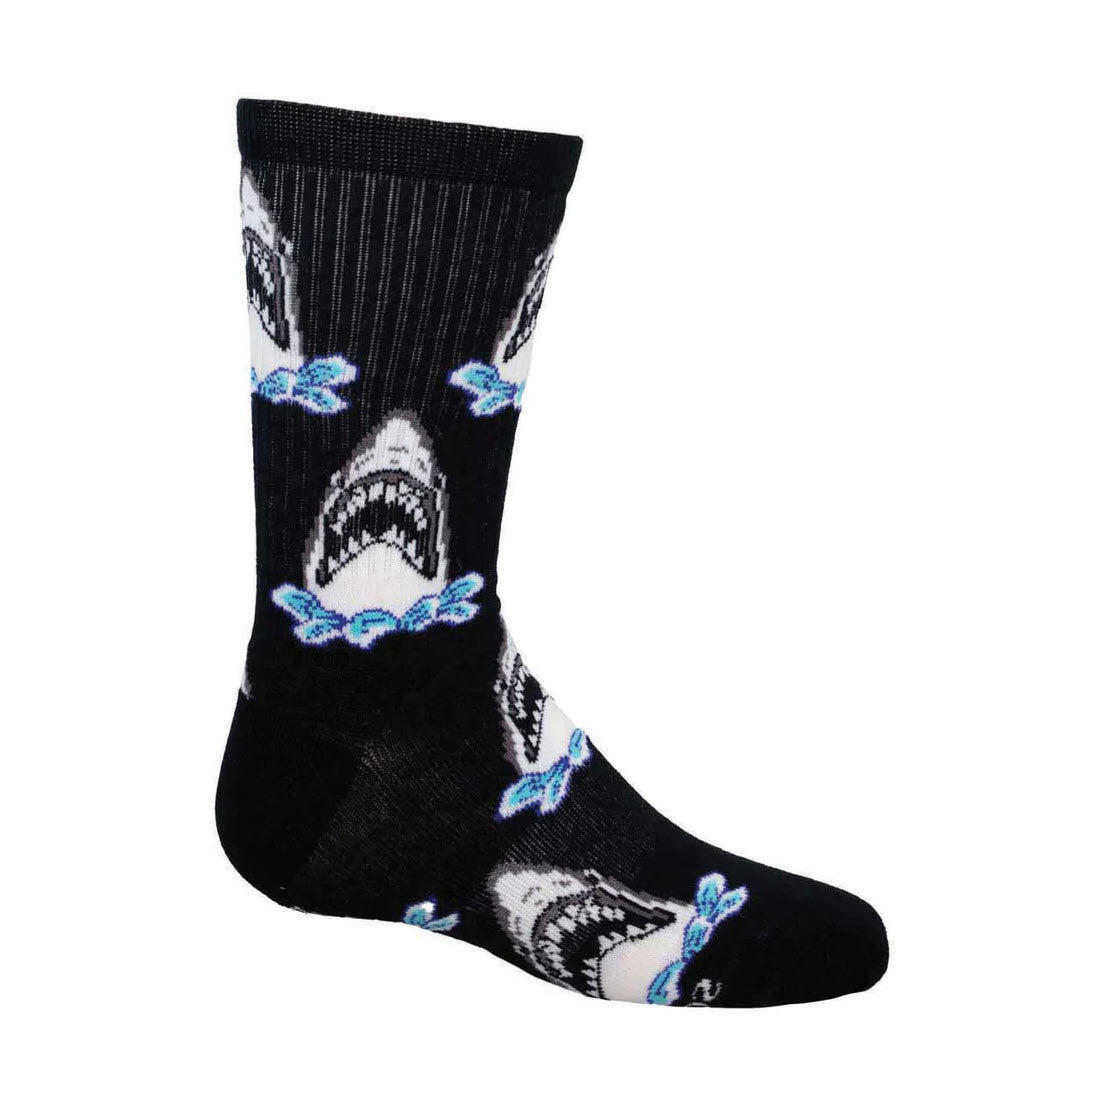 Socksmith Shark Attack Crew Socks Black - Kids, perfect for little explorers.